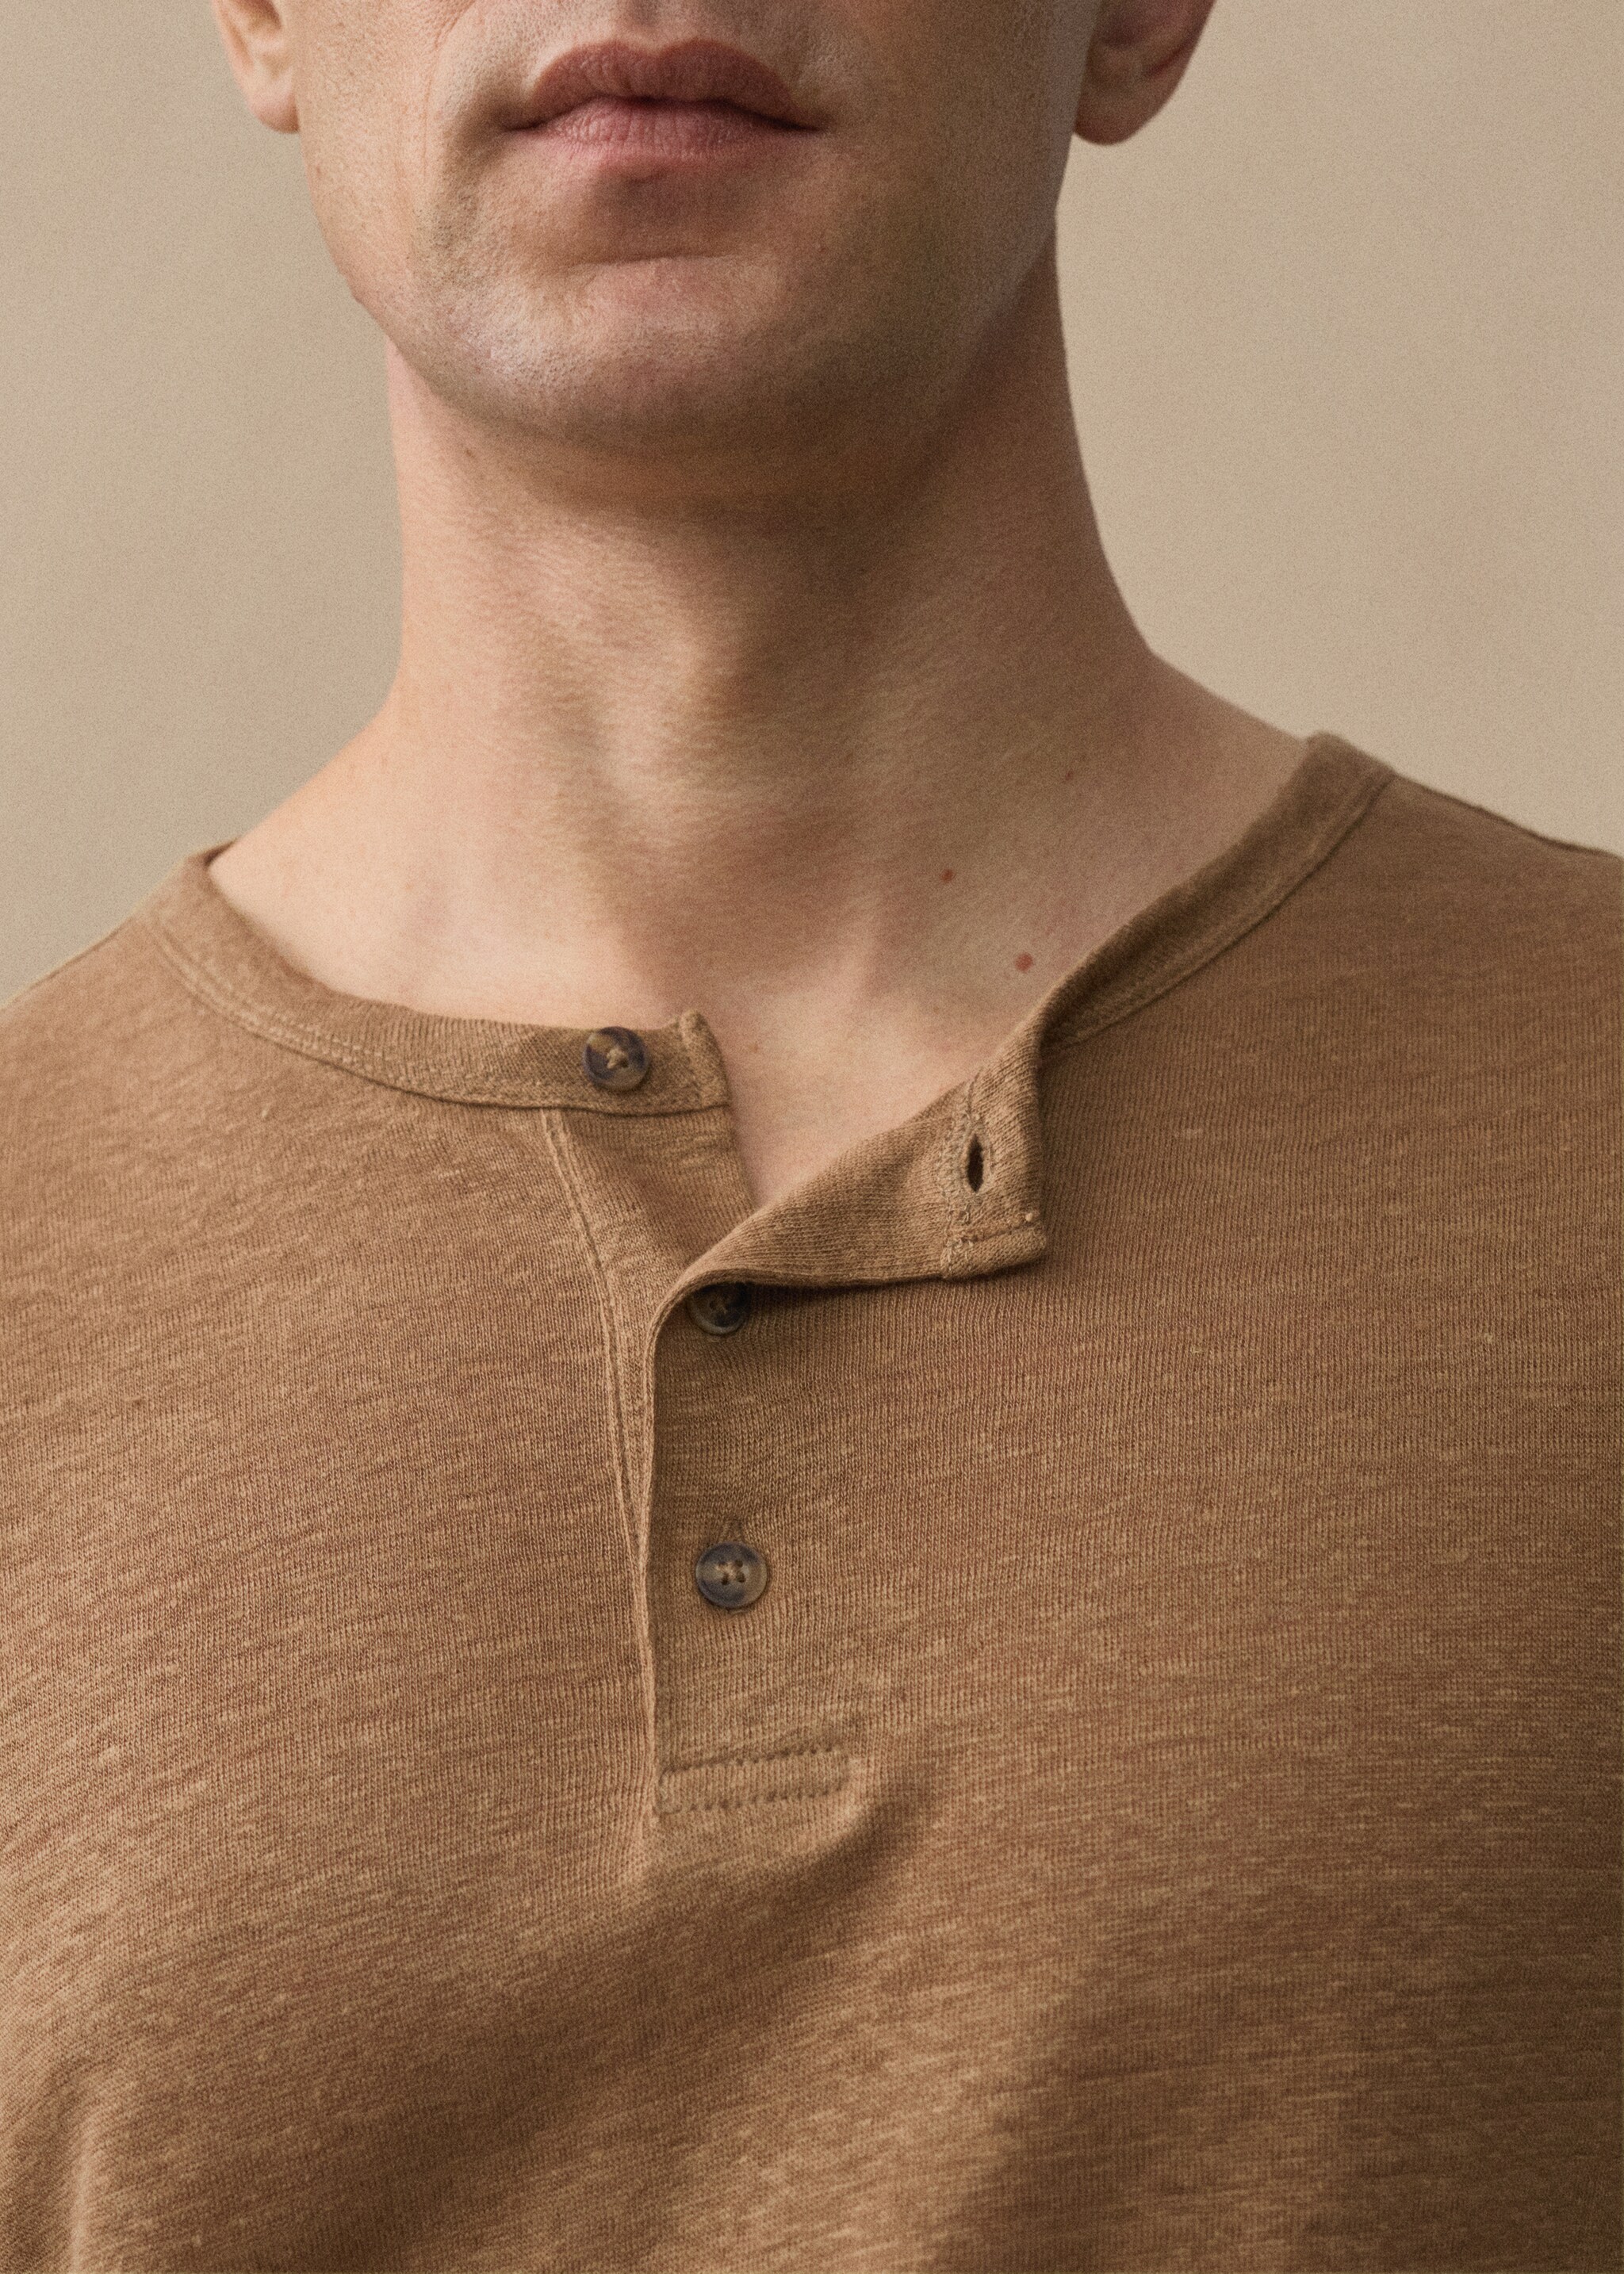 Camiseta slim fit 100% lino - Detalle del artículo 5